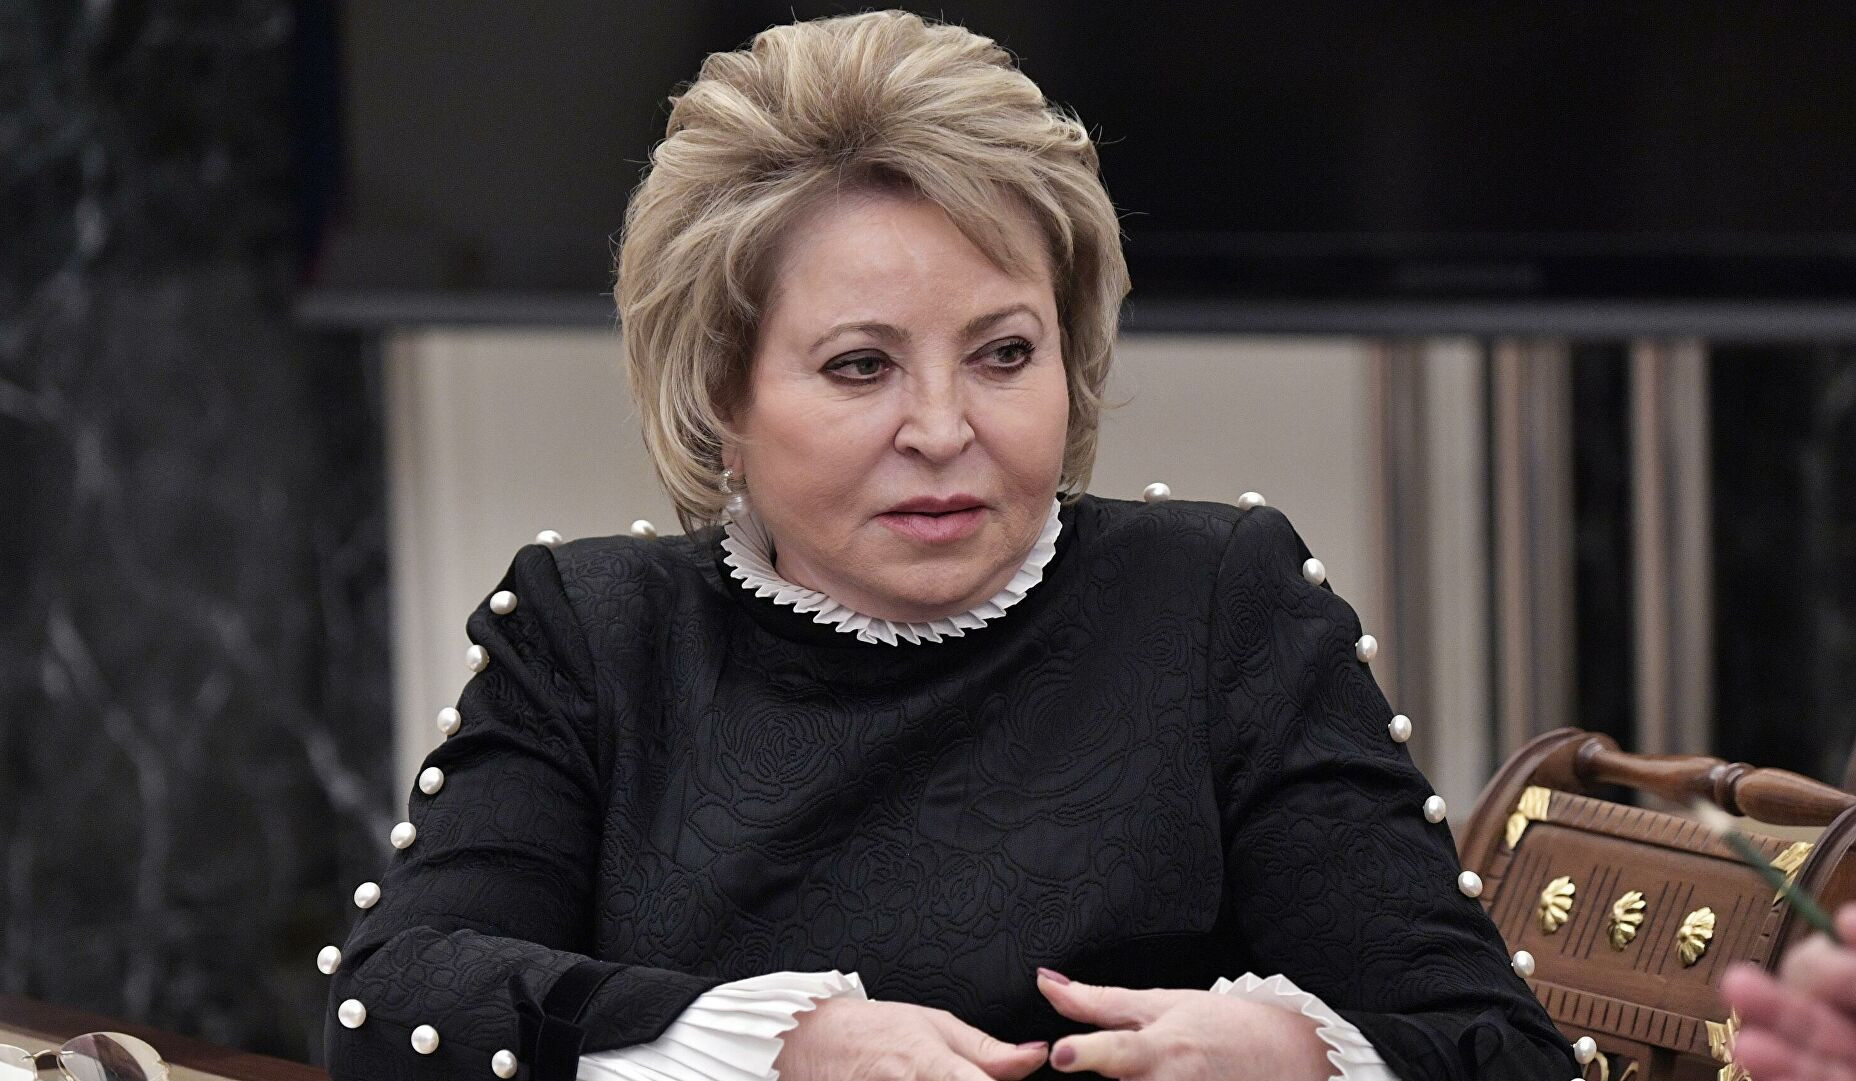 Матвиенко выразила надежду на разрешение ситуации в Нагорном Карабахе мирным договором